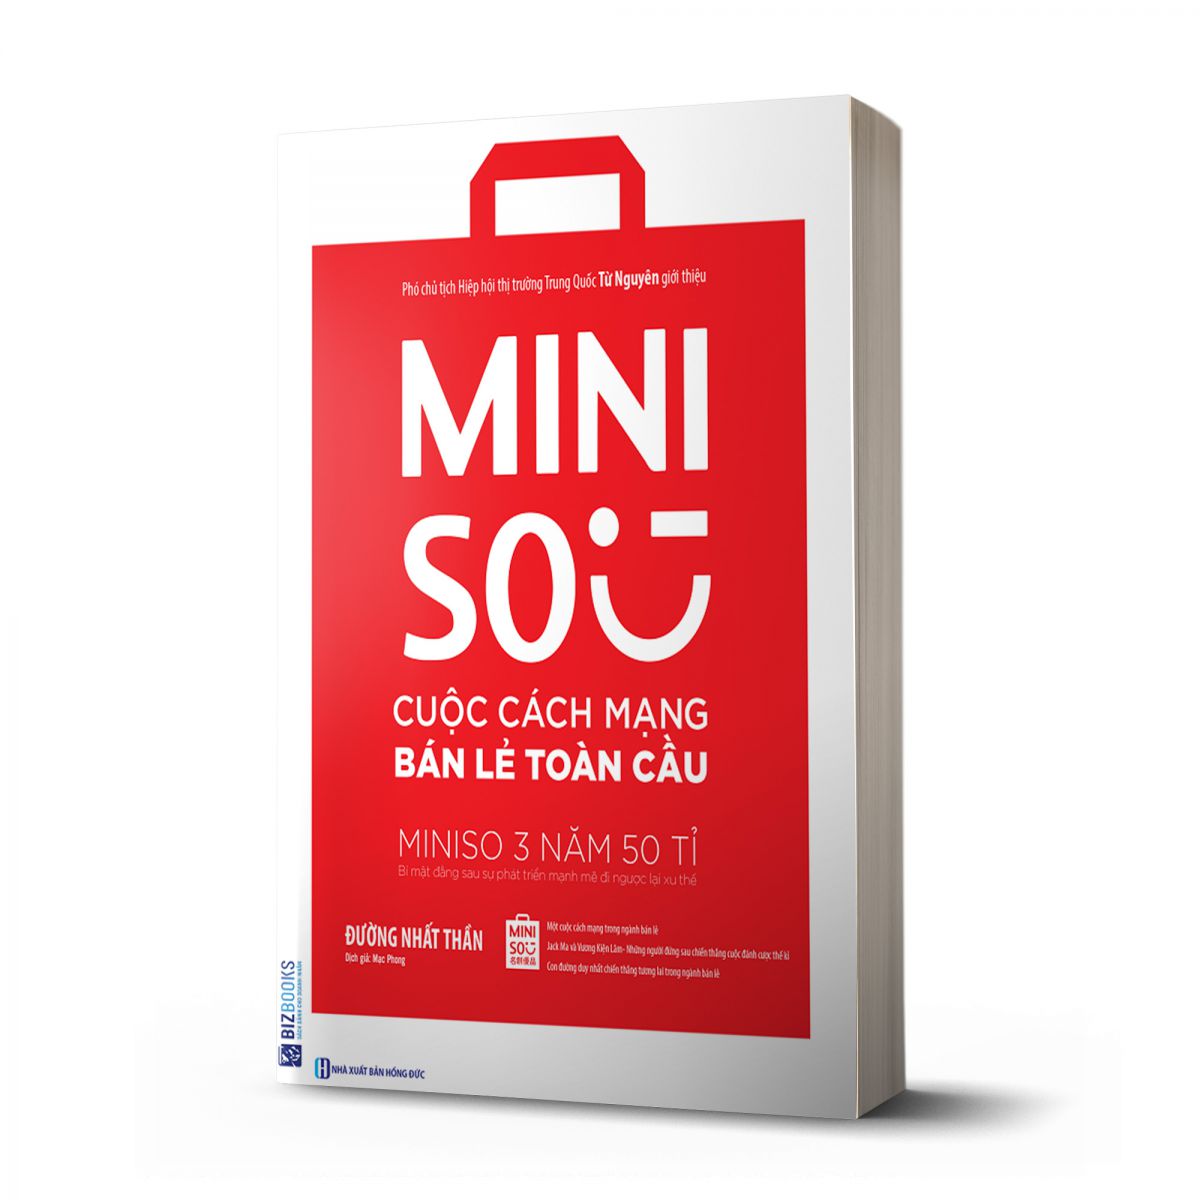 Miniso: Cuộc cách mạng bán lẻ toàn cầu 1